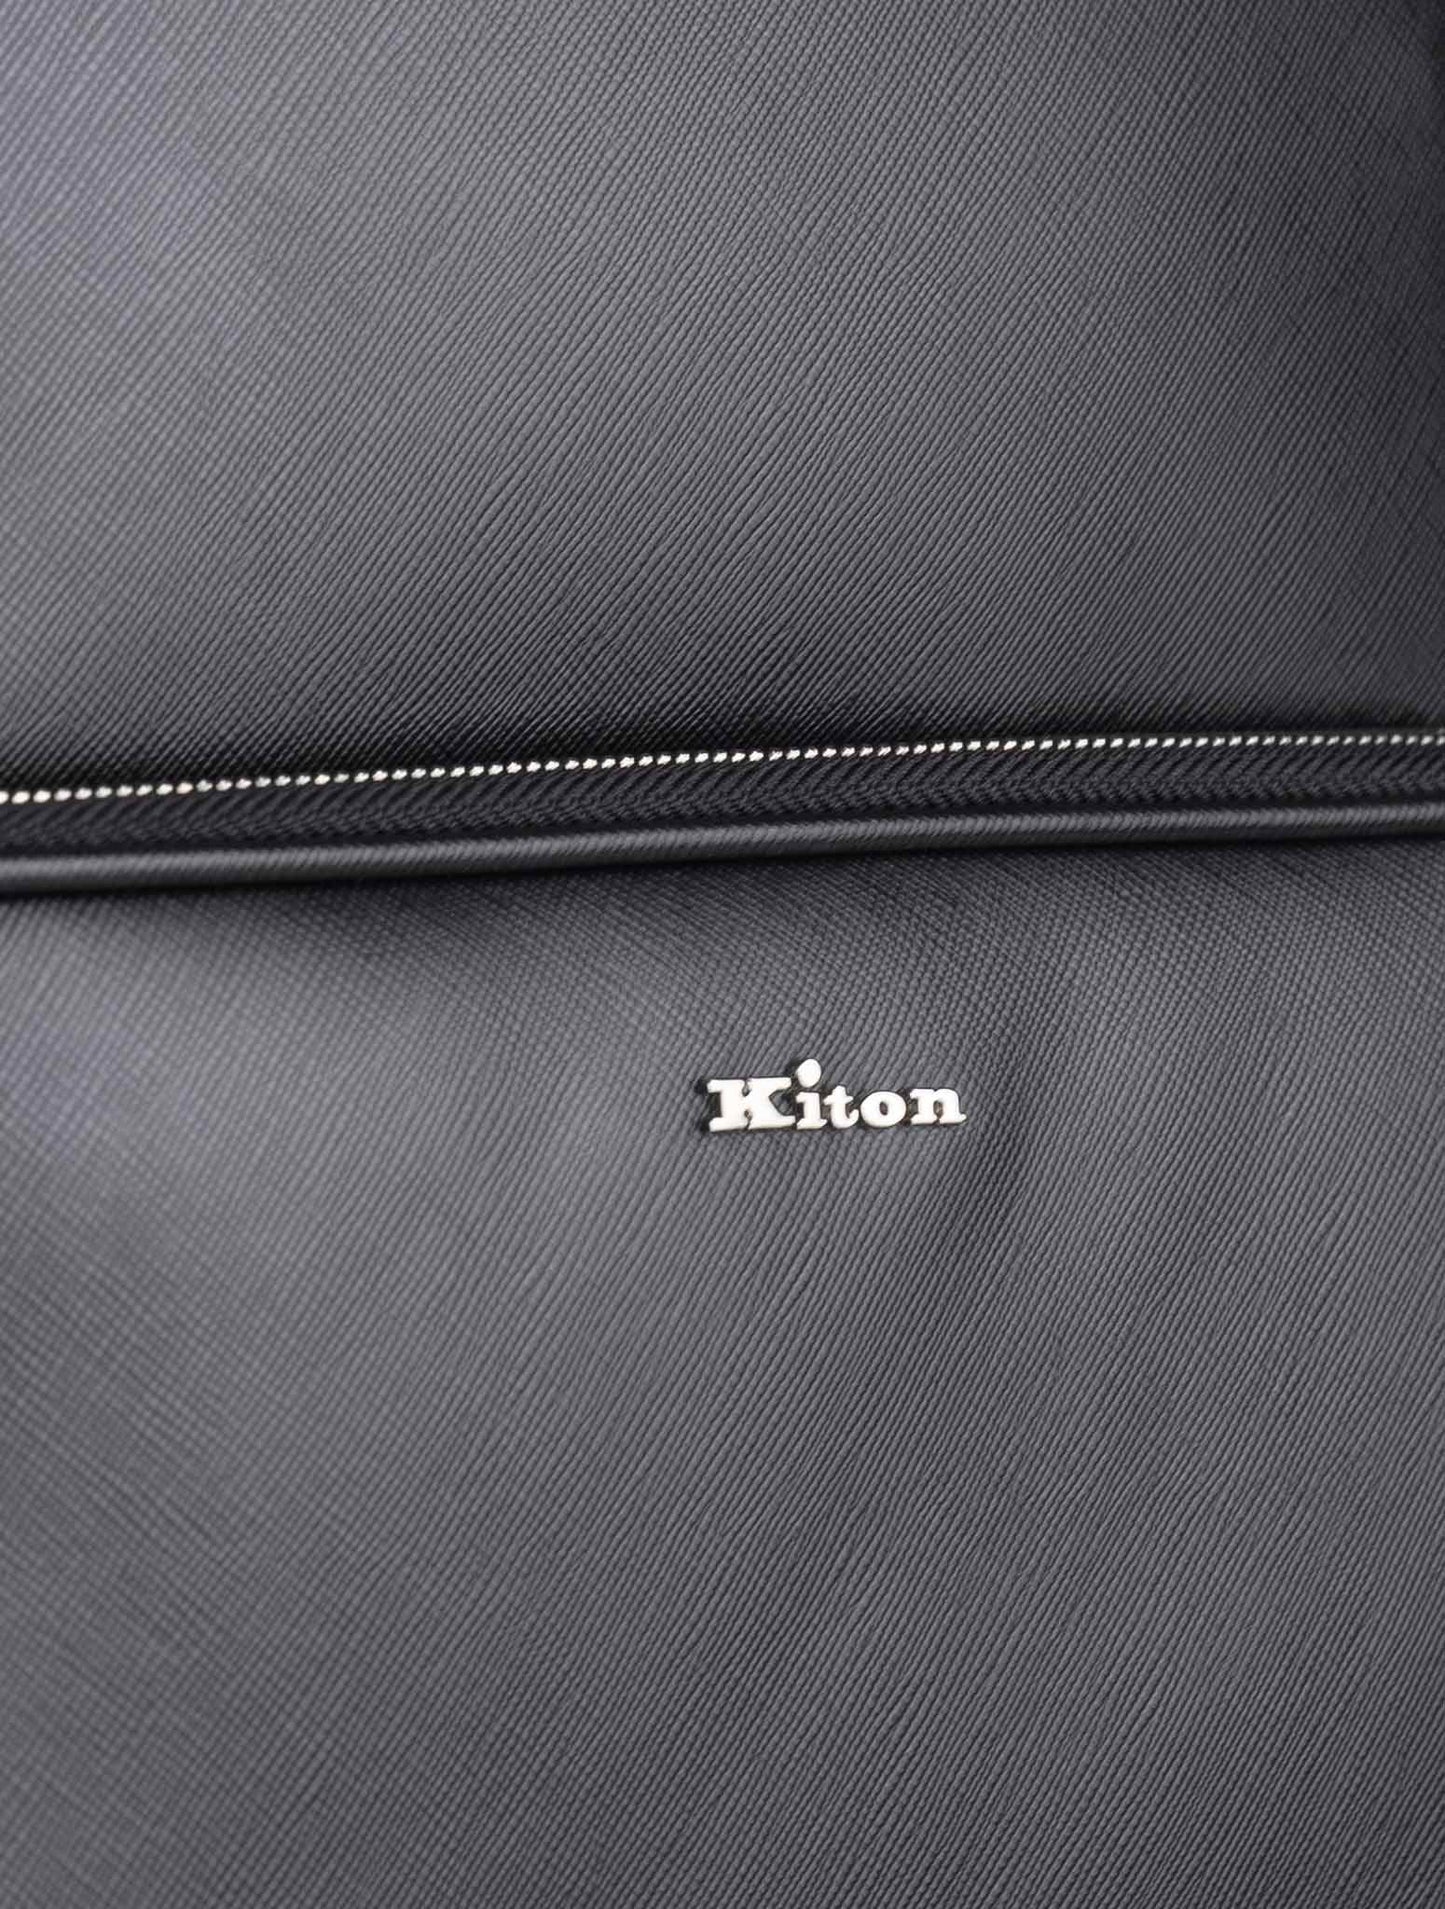 Kiton Черный кожаный рюкзак для телячьей кожи